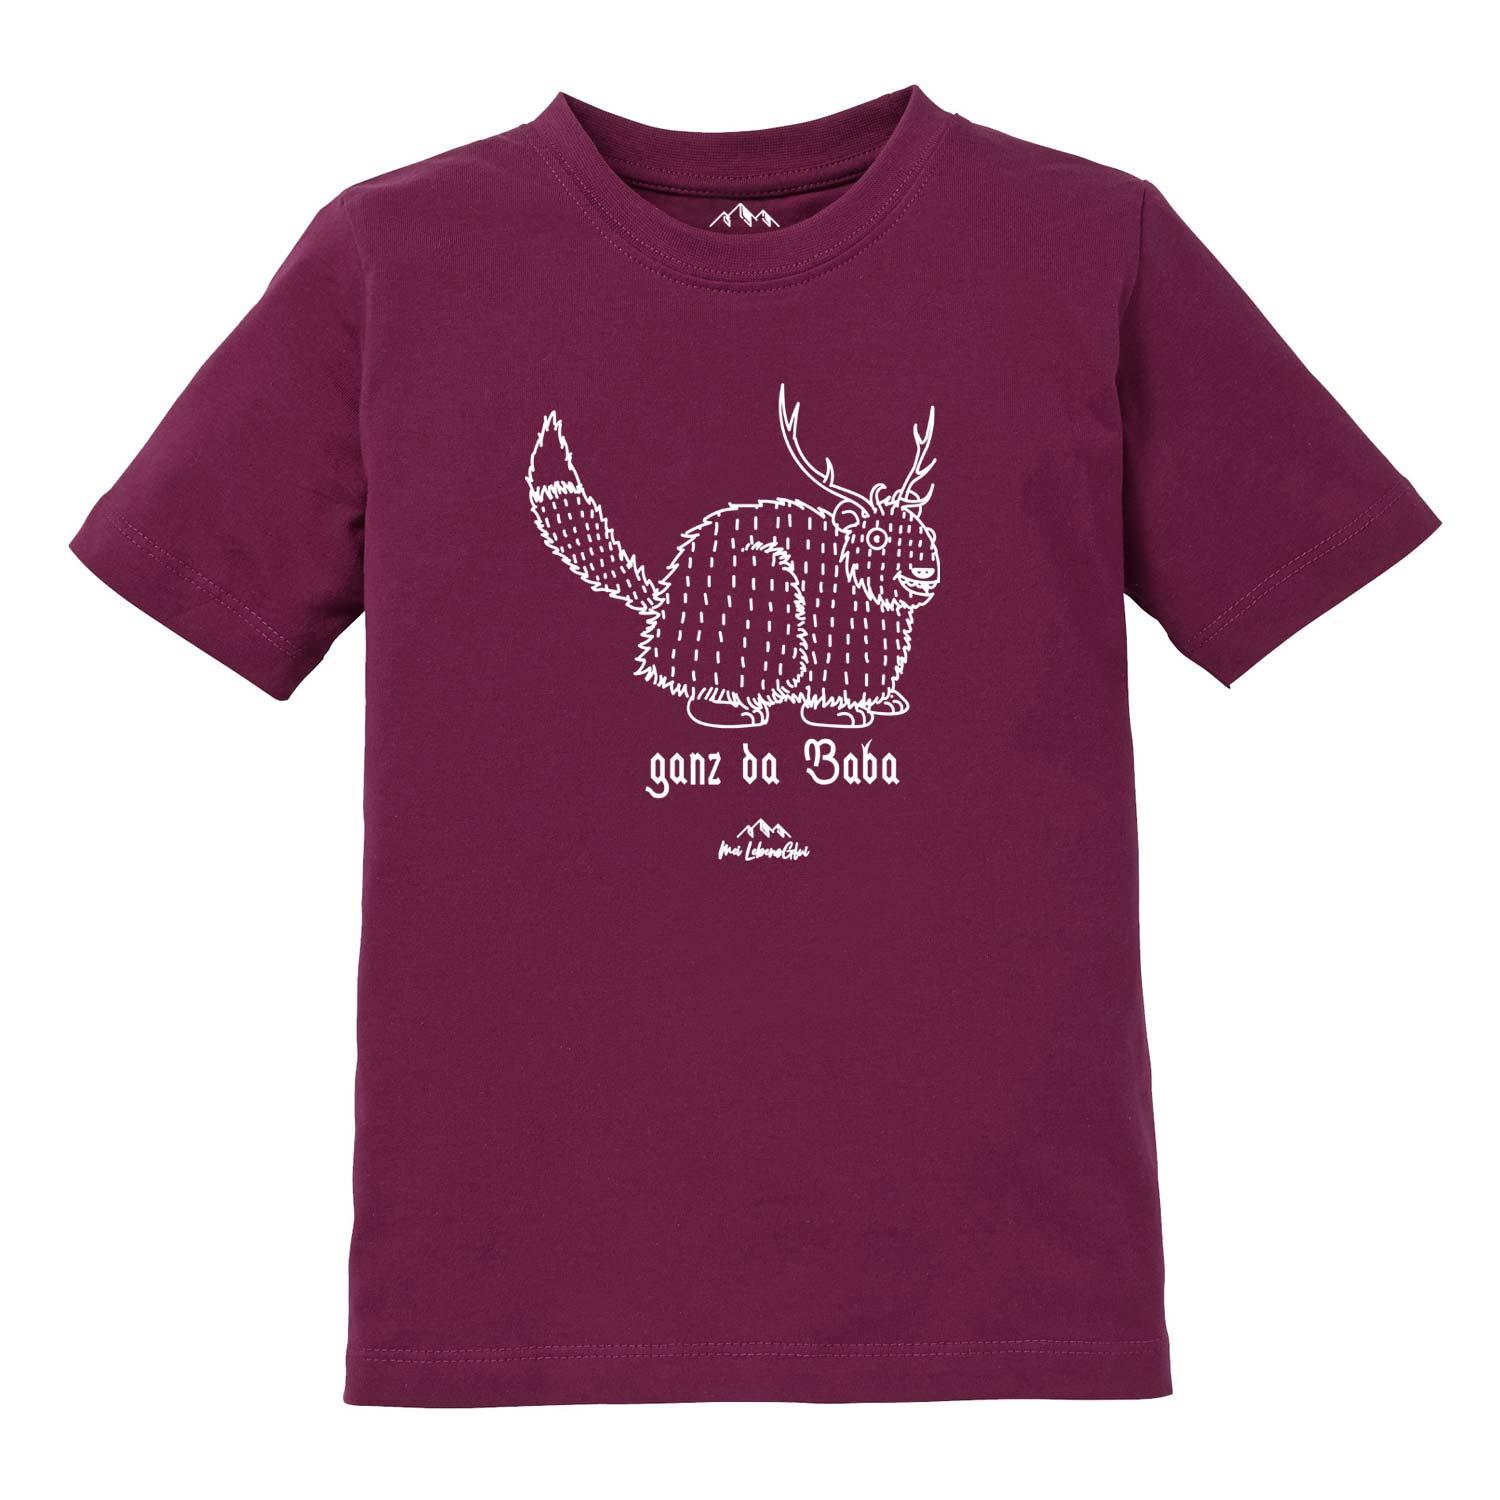 Kinder T-Shirt Wolpertinger "Ganz da Baba" - bavariashop - mei LebensGfui